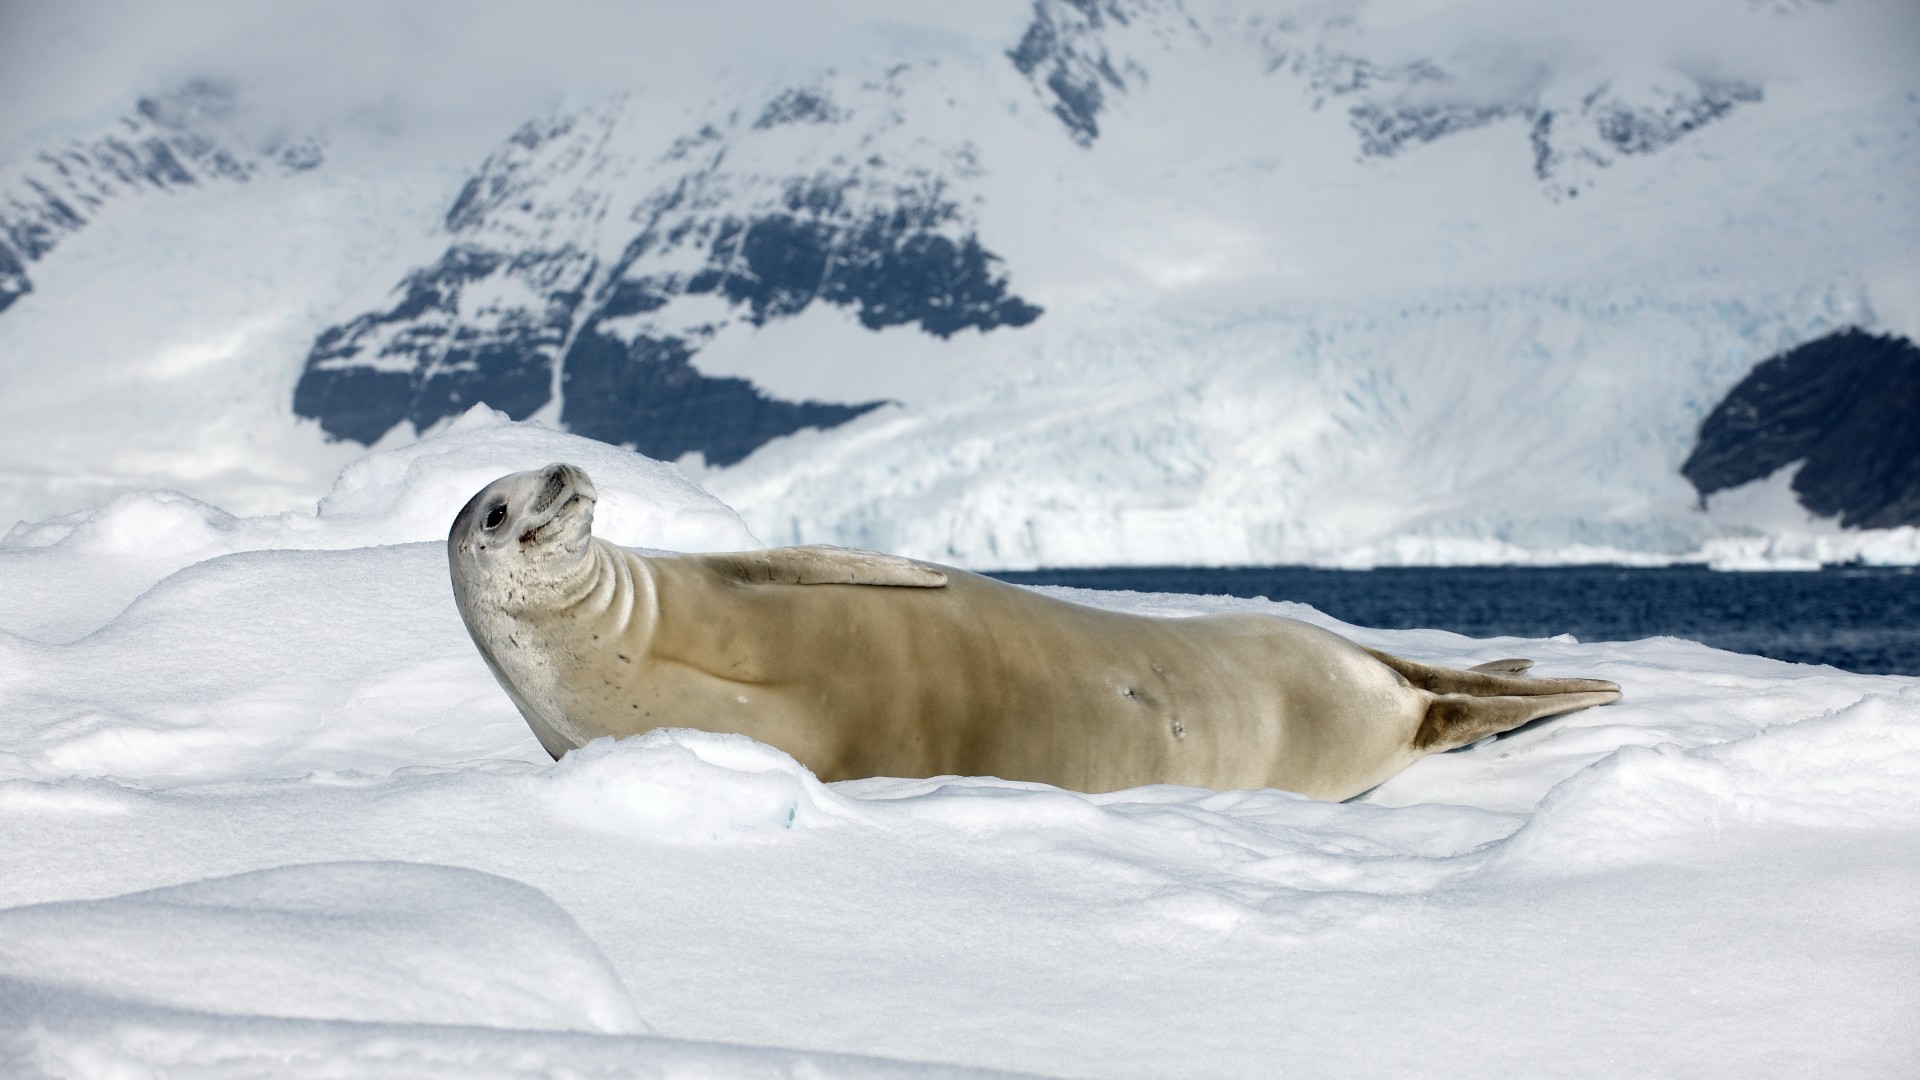 тюлень, крабоед, солнечный день, улыбка, Антарктида, животное, Crabeater seal, sea calf, Antarctica, snow, sunny day, animal, smile (horizontal)